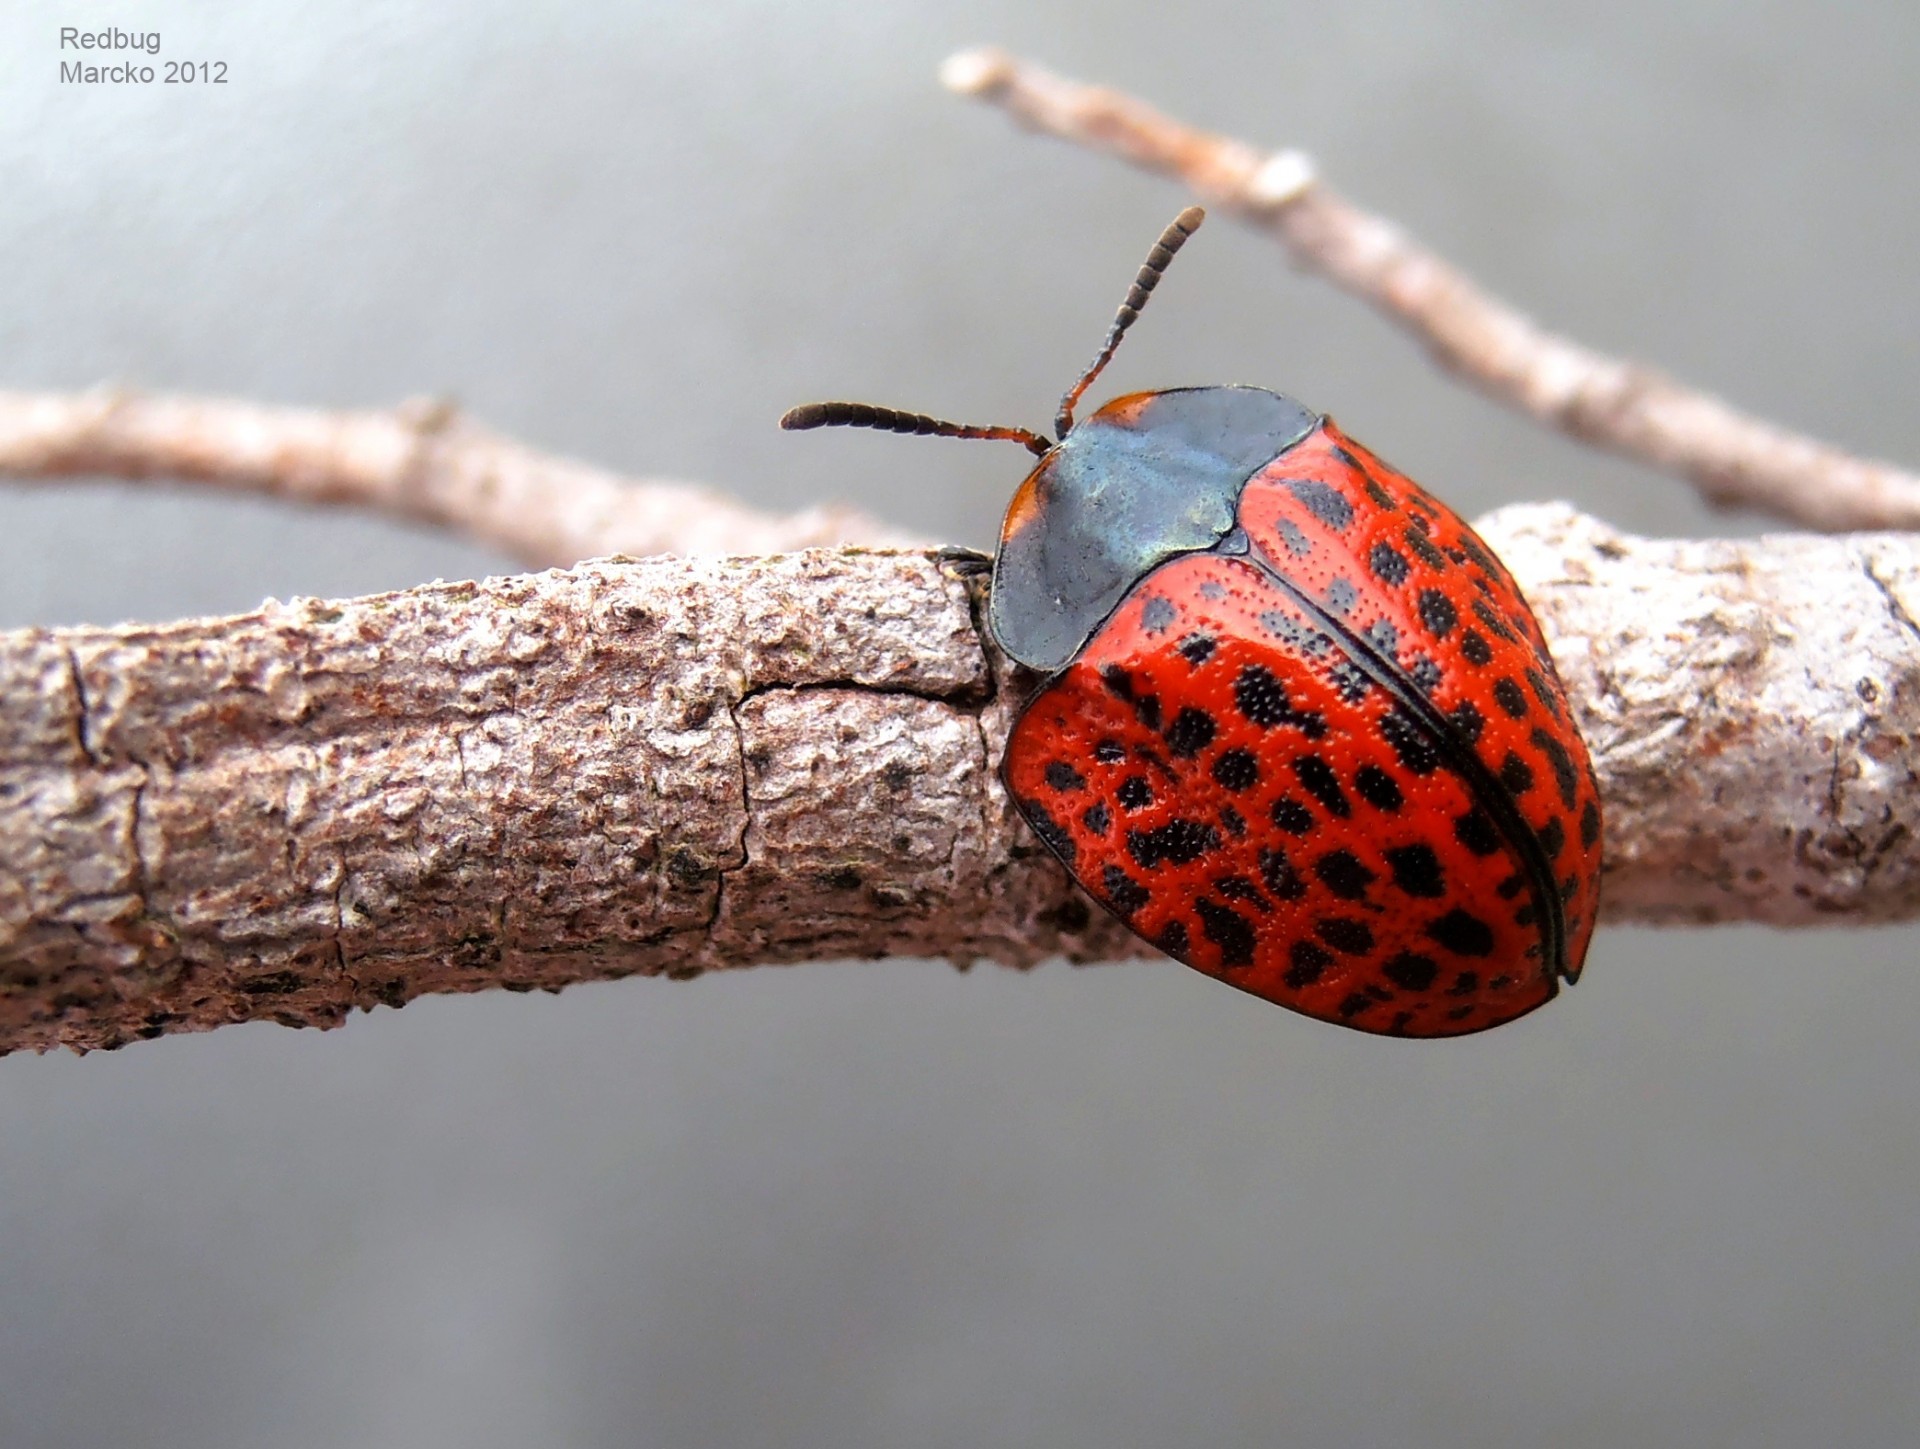 beetle vichada coleoptera free photo